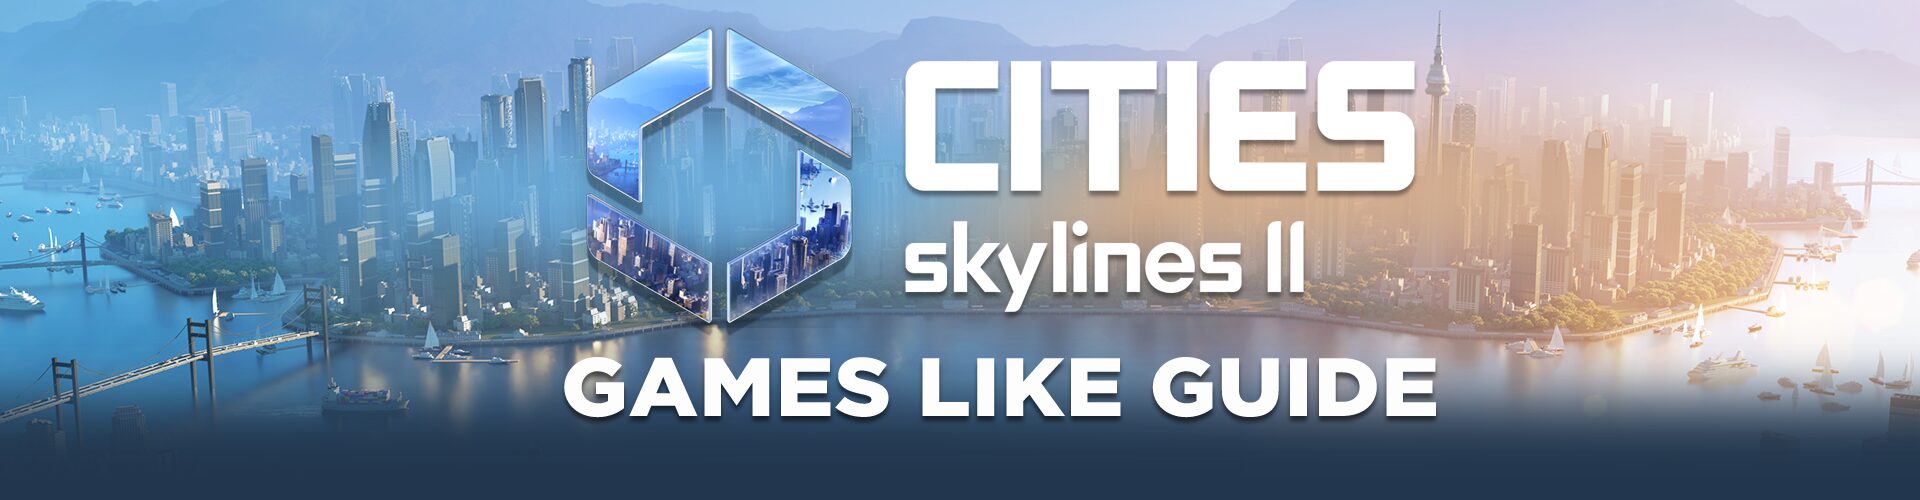 Spiele Wie Cities Skyline 2